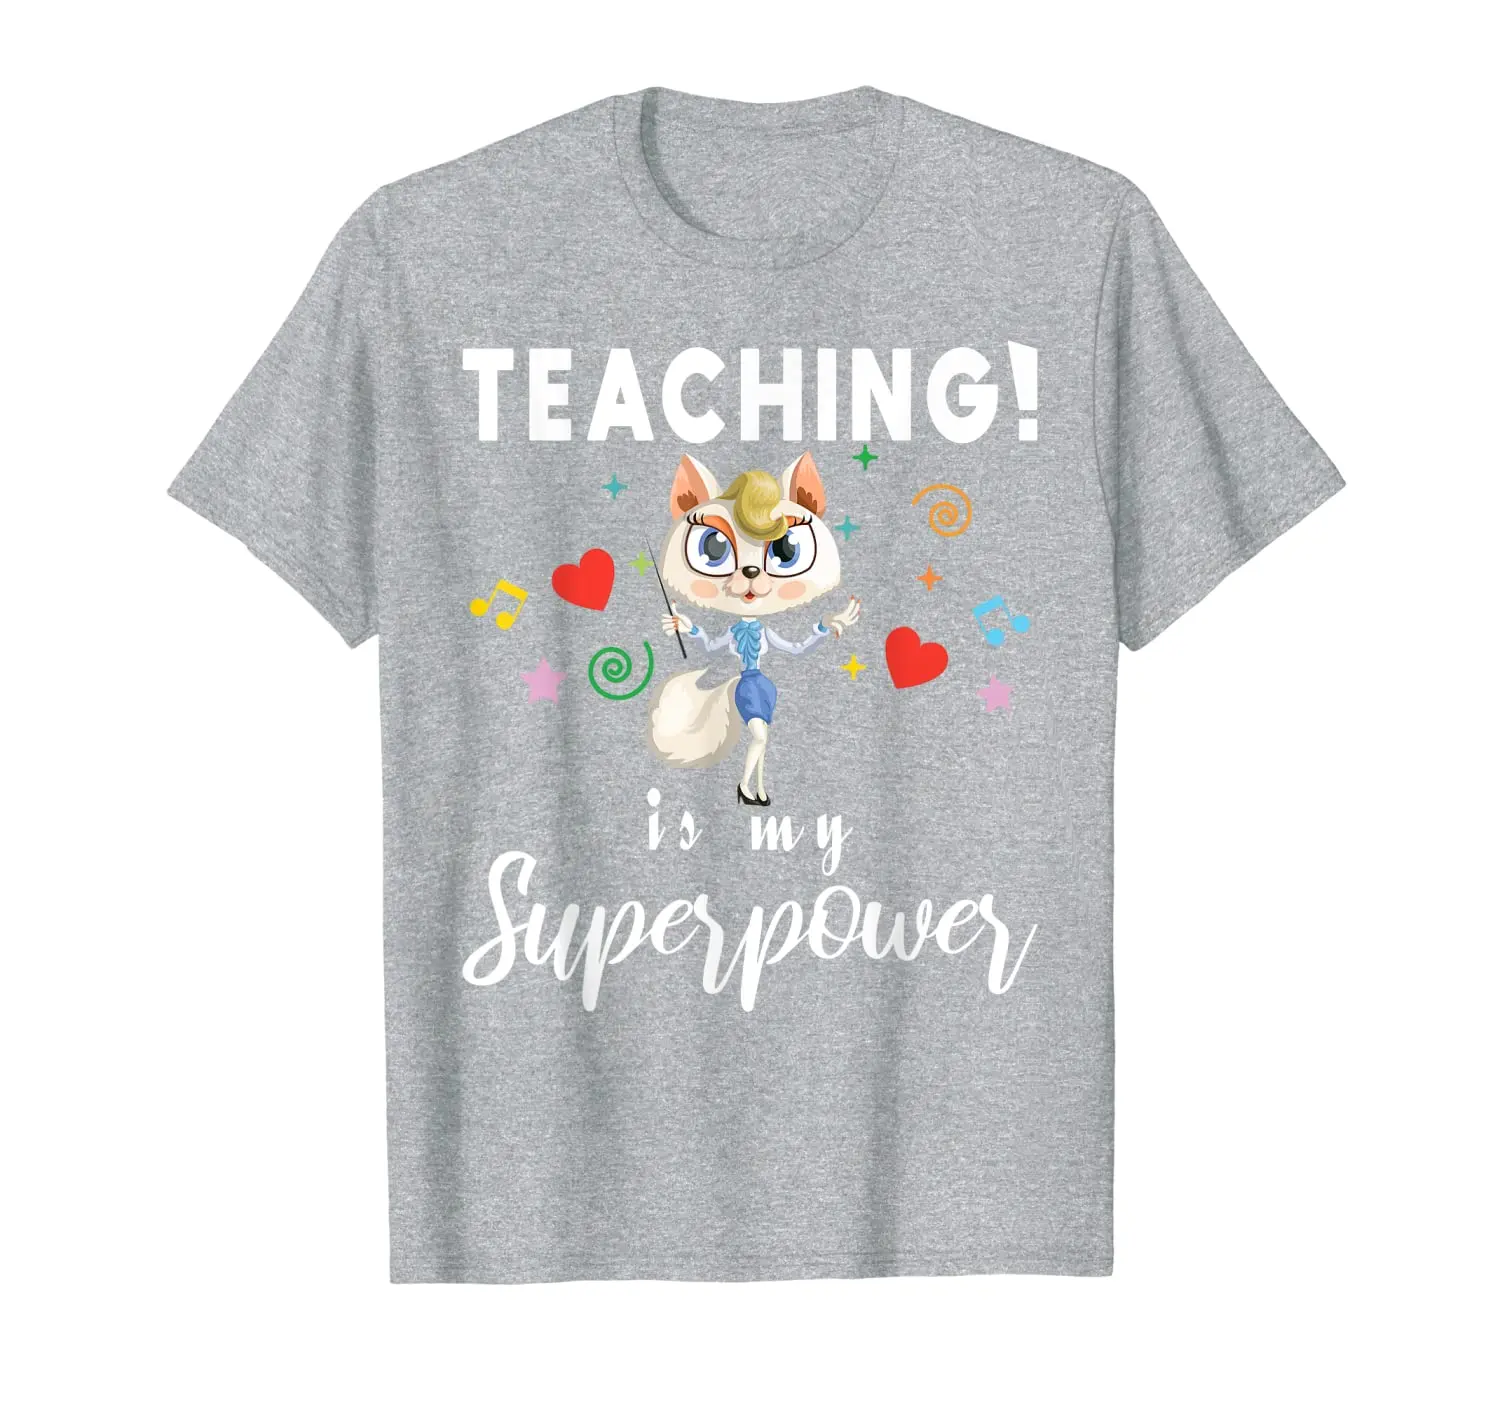 

Учебно-это моя суперсила рубашка Для женщин Back To School футболка для учителя